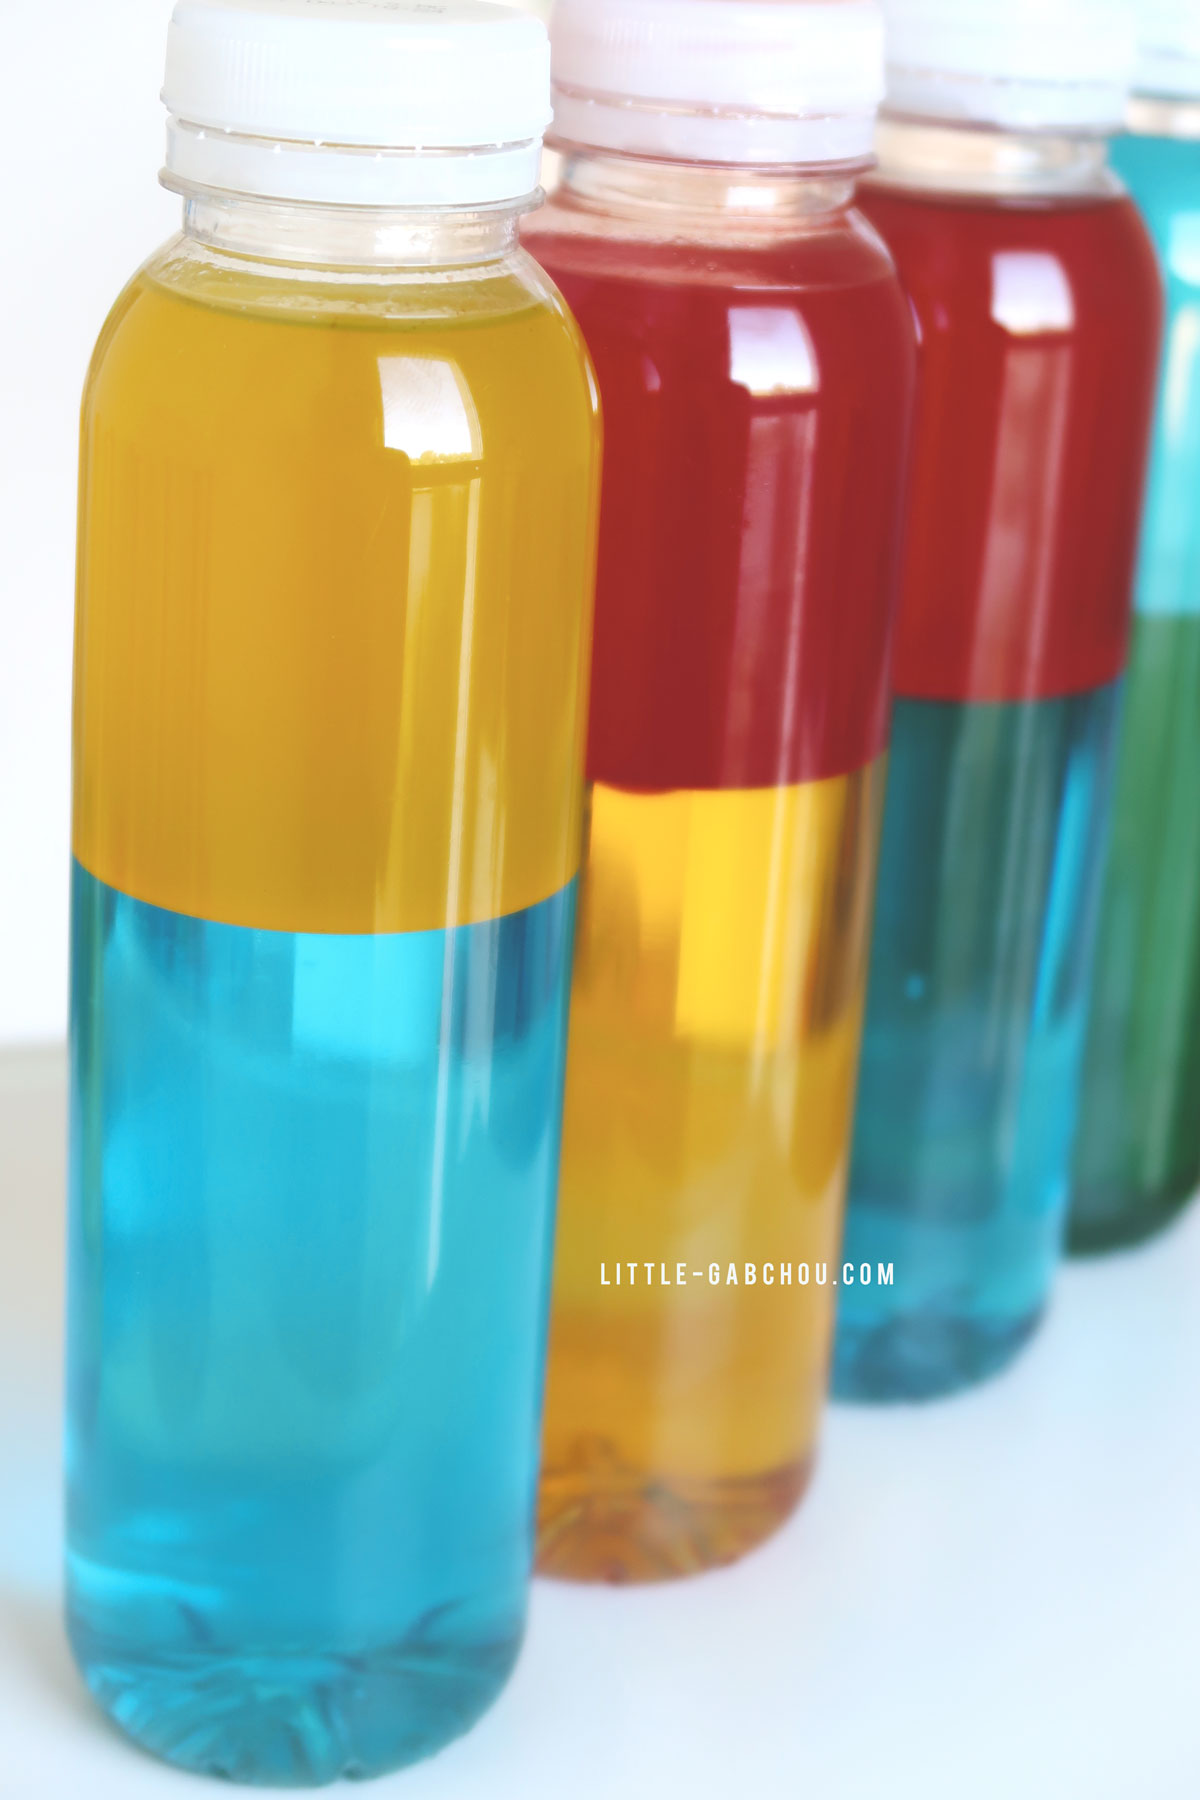 Apprendre les couleurs avec les bouteilles sensorielles